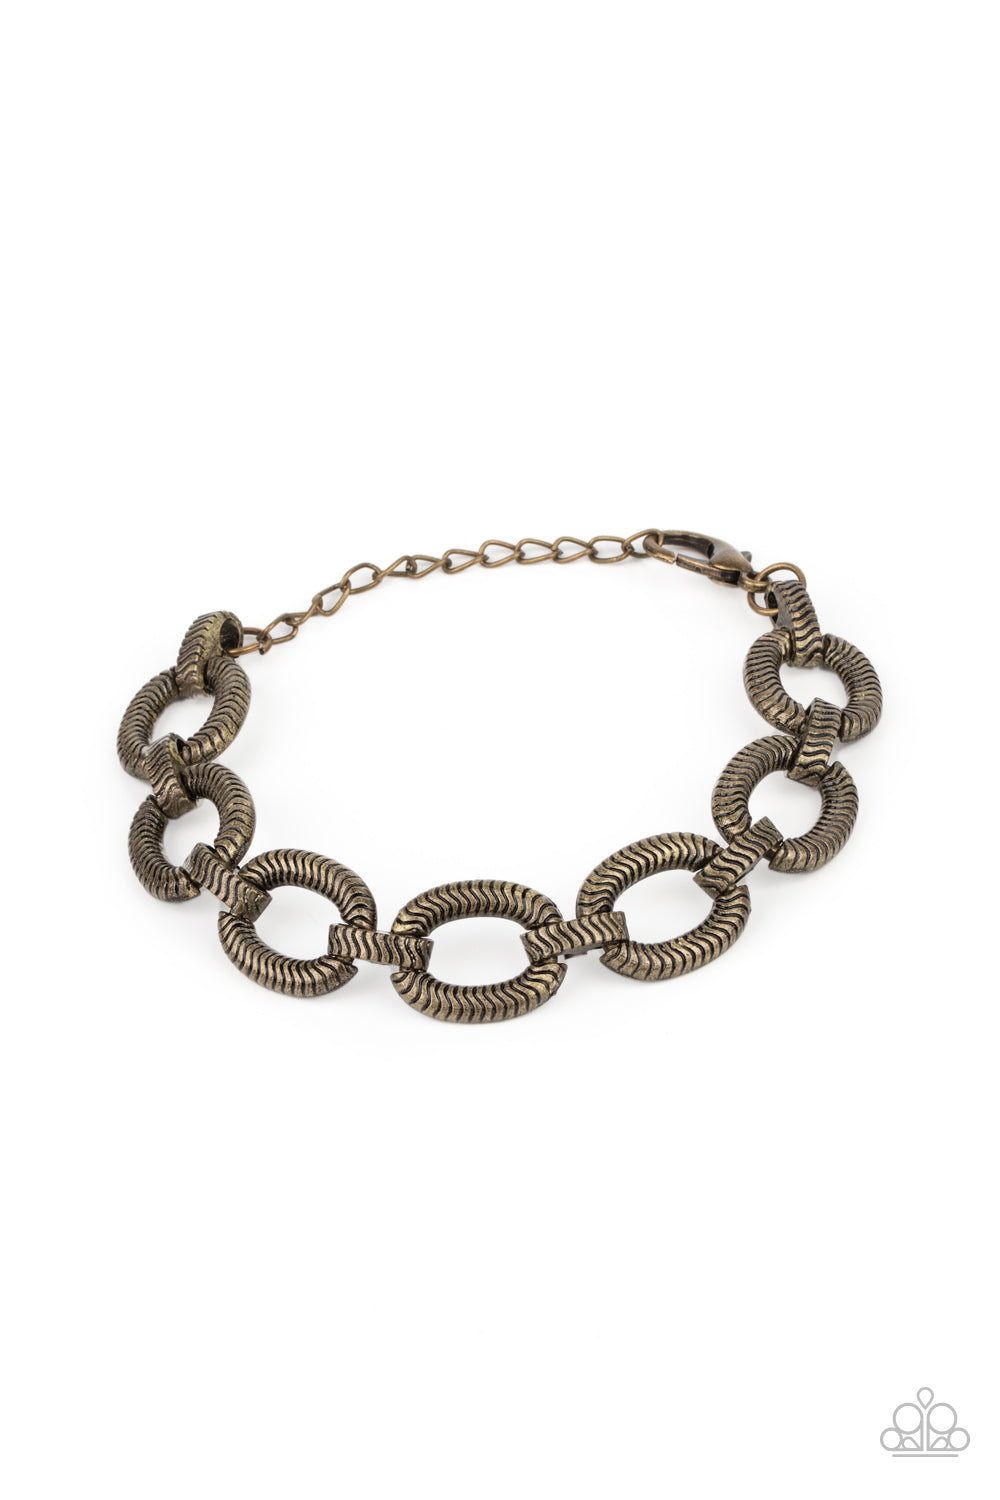 Industrial Amazon - brass - Paparazzi bracelet